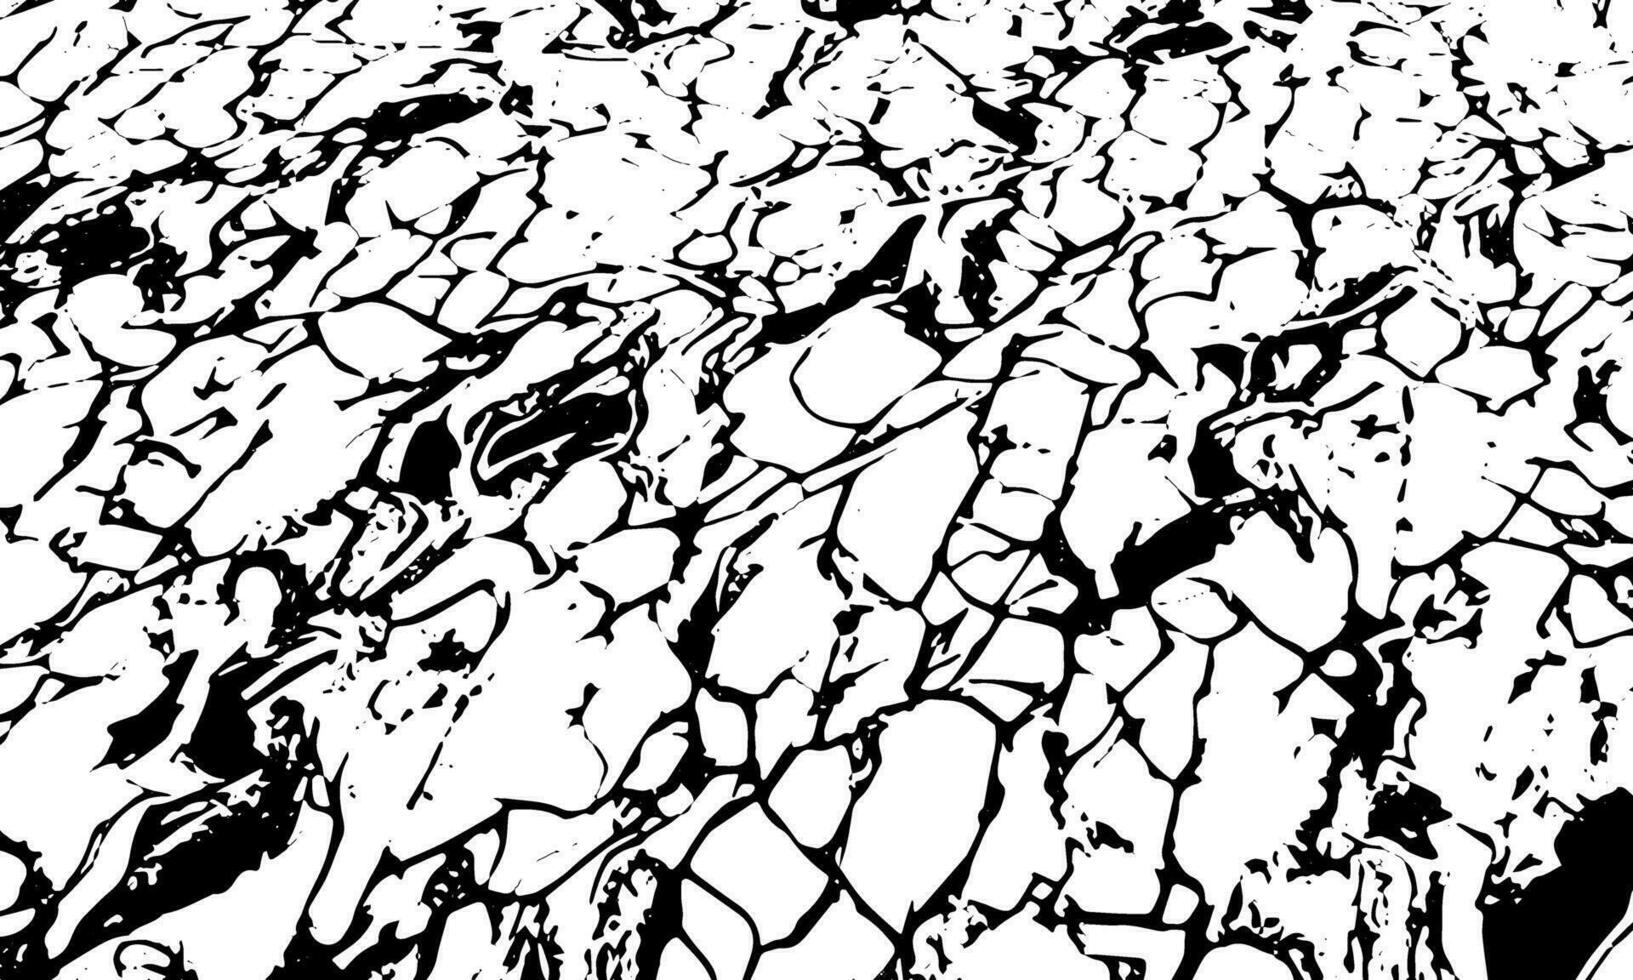 ein schwarz und Weiß Zeichnung von ein Felsen Mauer vektor